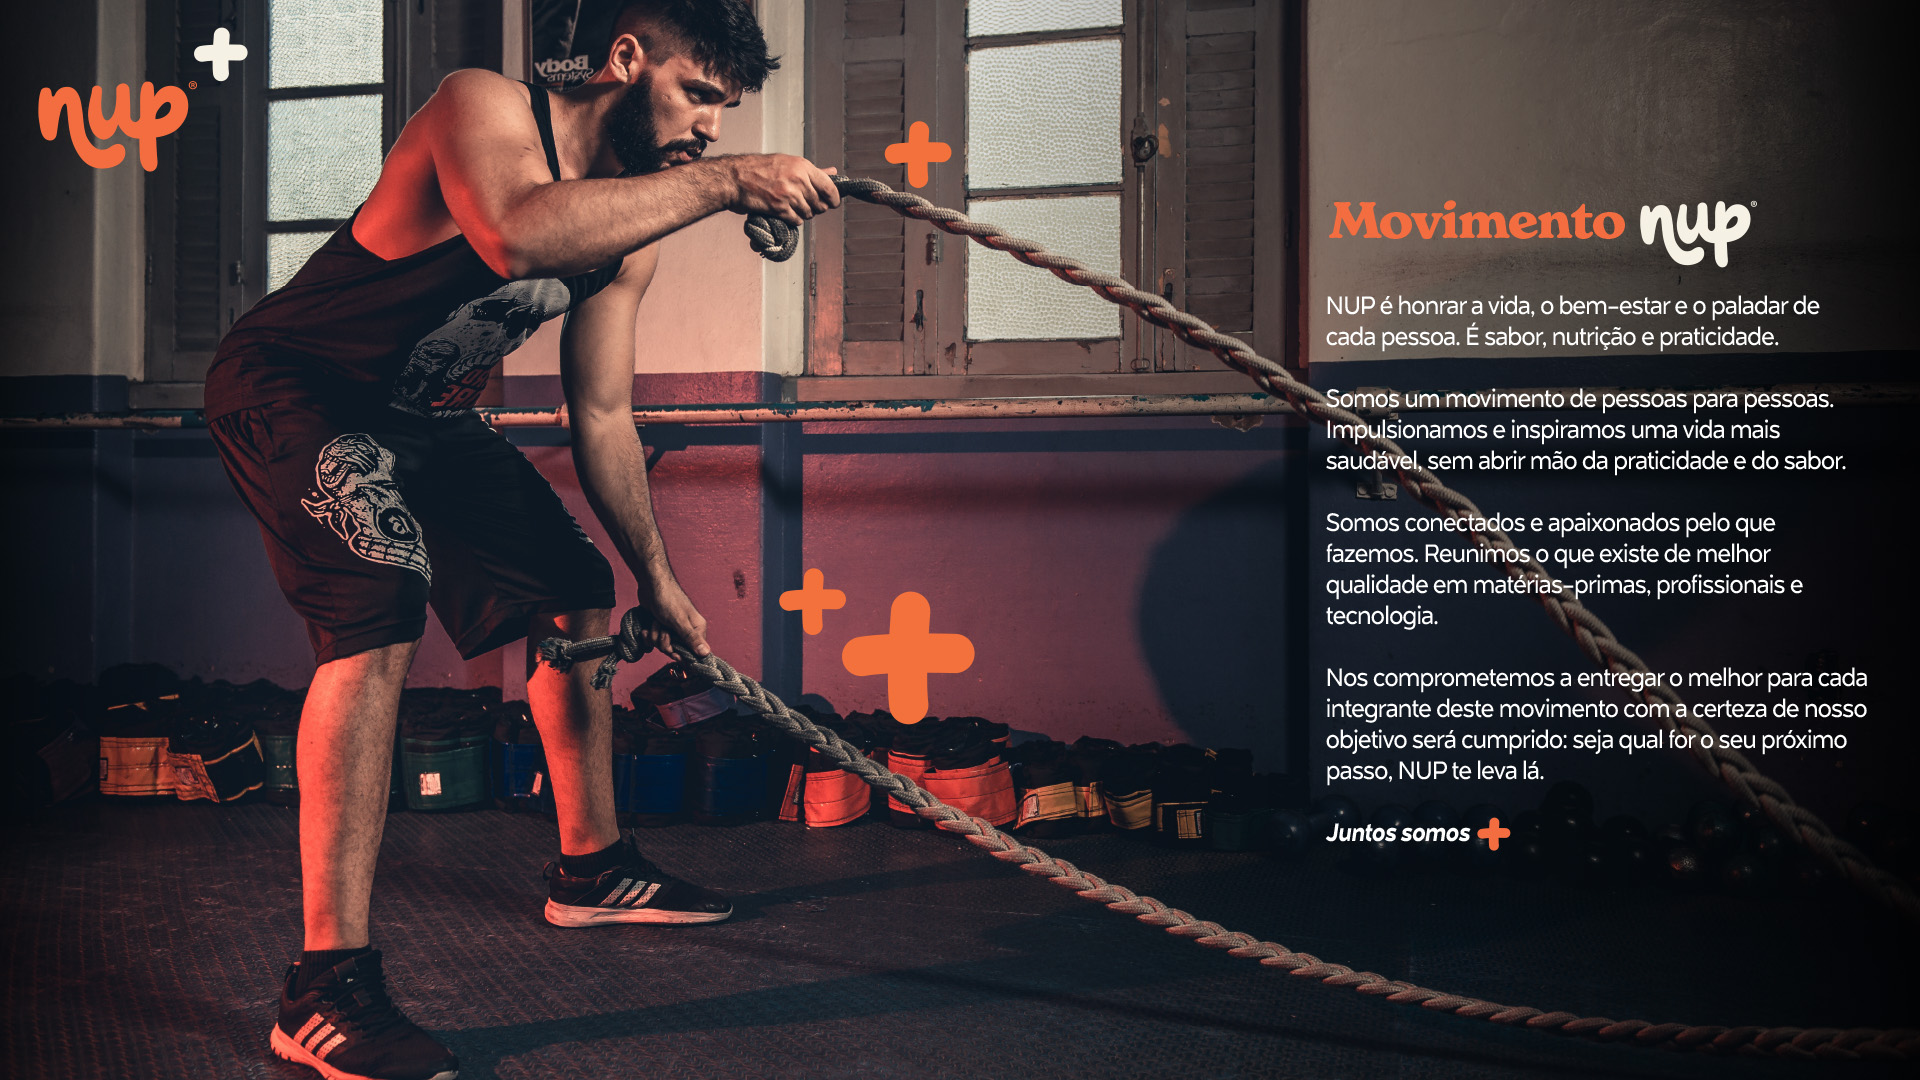 Imagem de homem se exercitando com cordas crossfit e comunicação NUP.